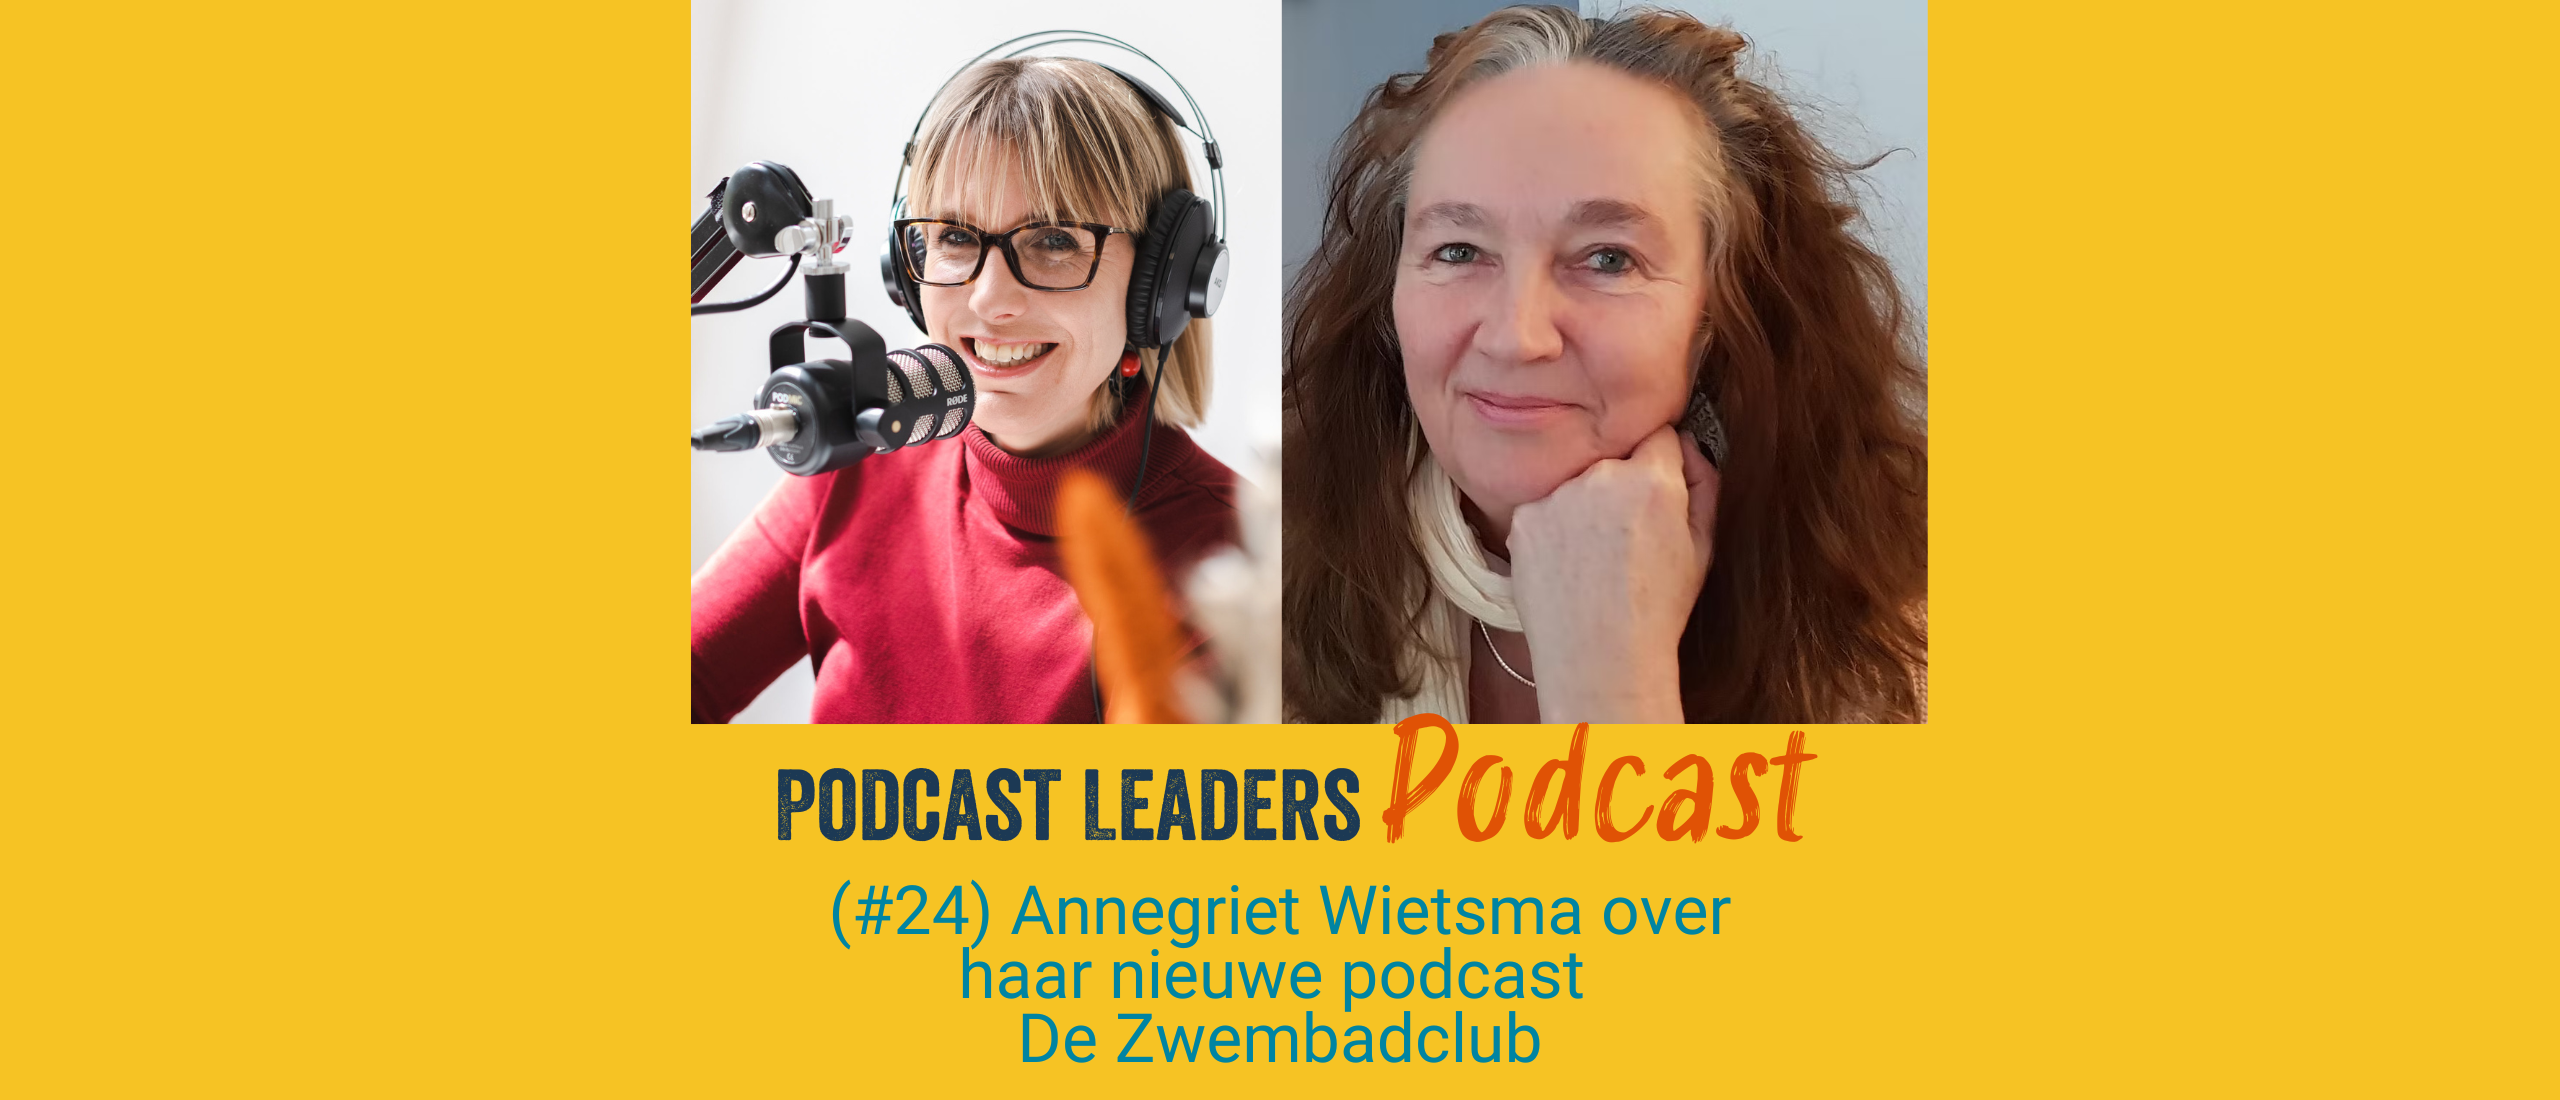 Achter de podcastschermen van Annegriet Wietsma